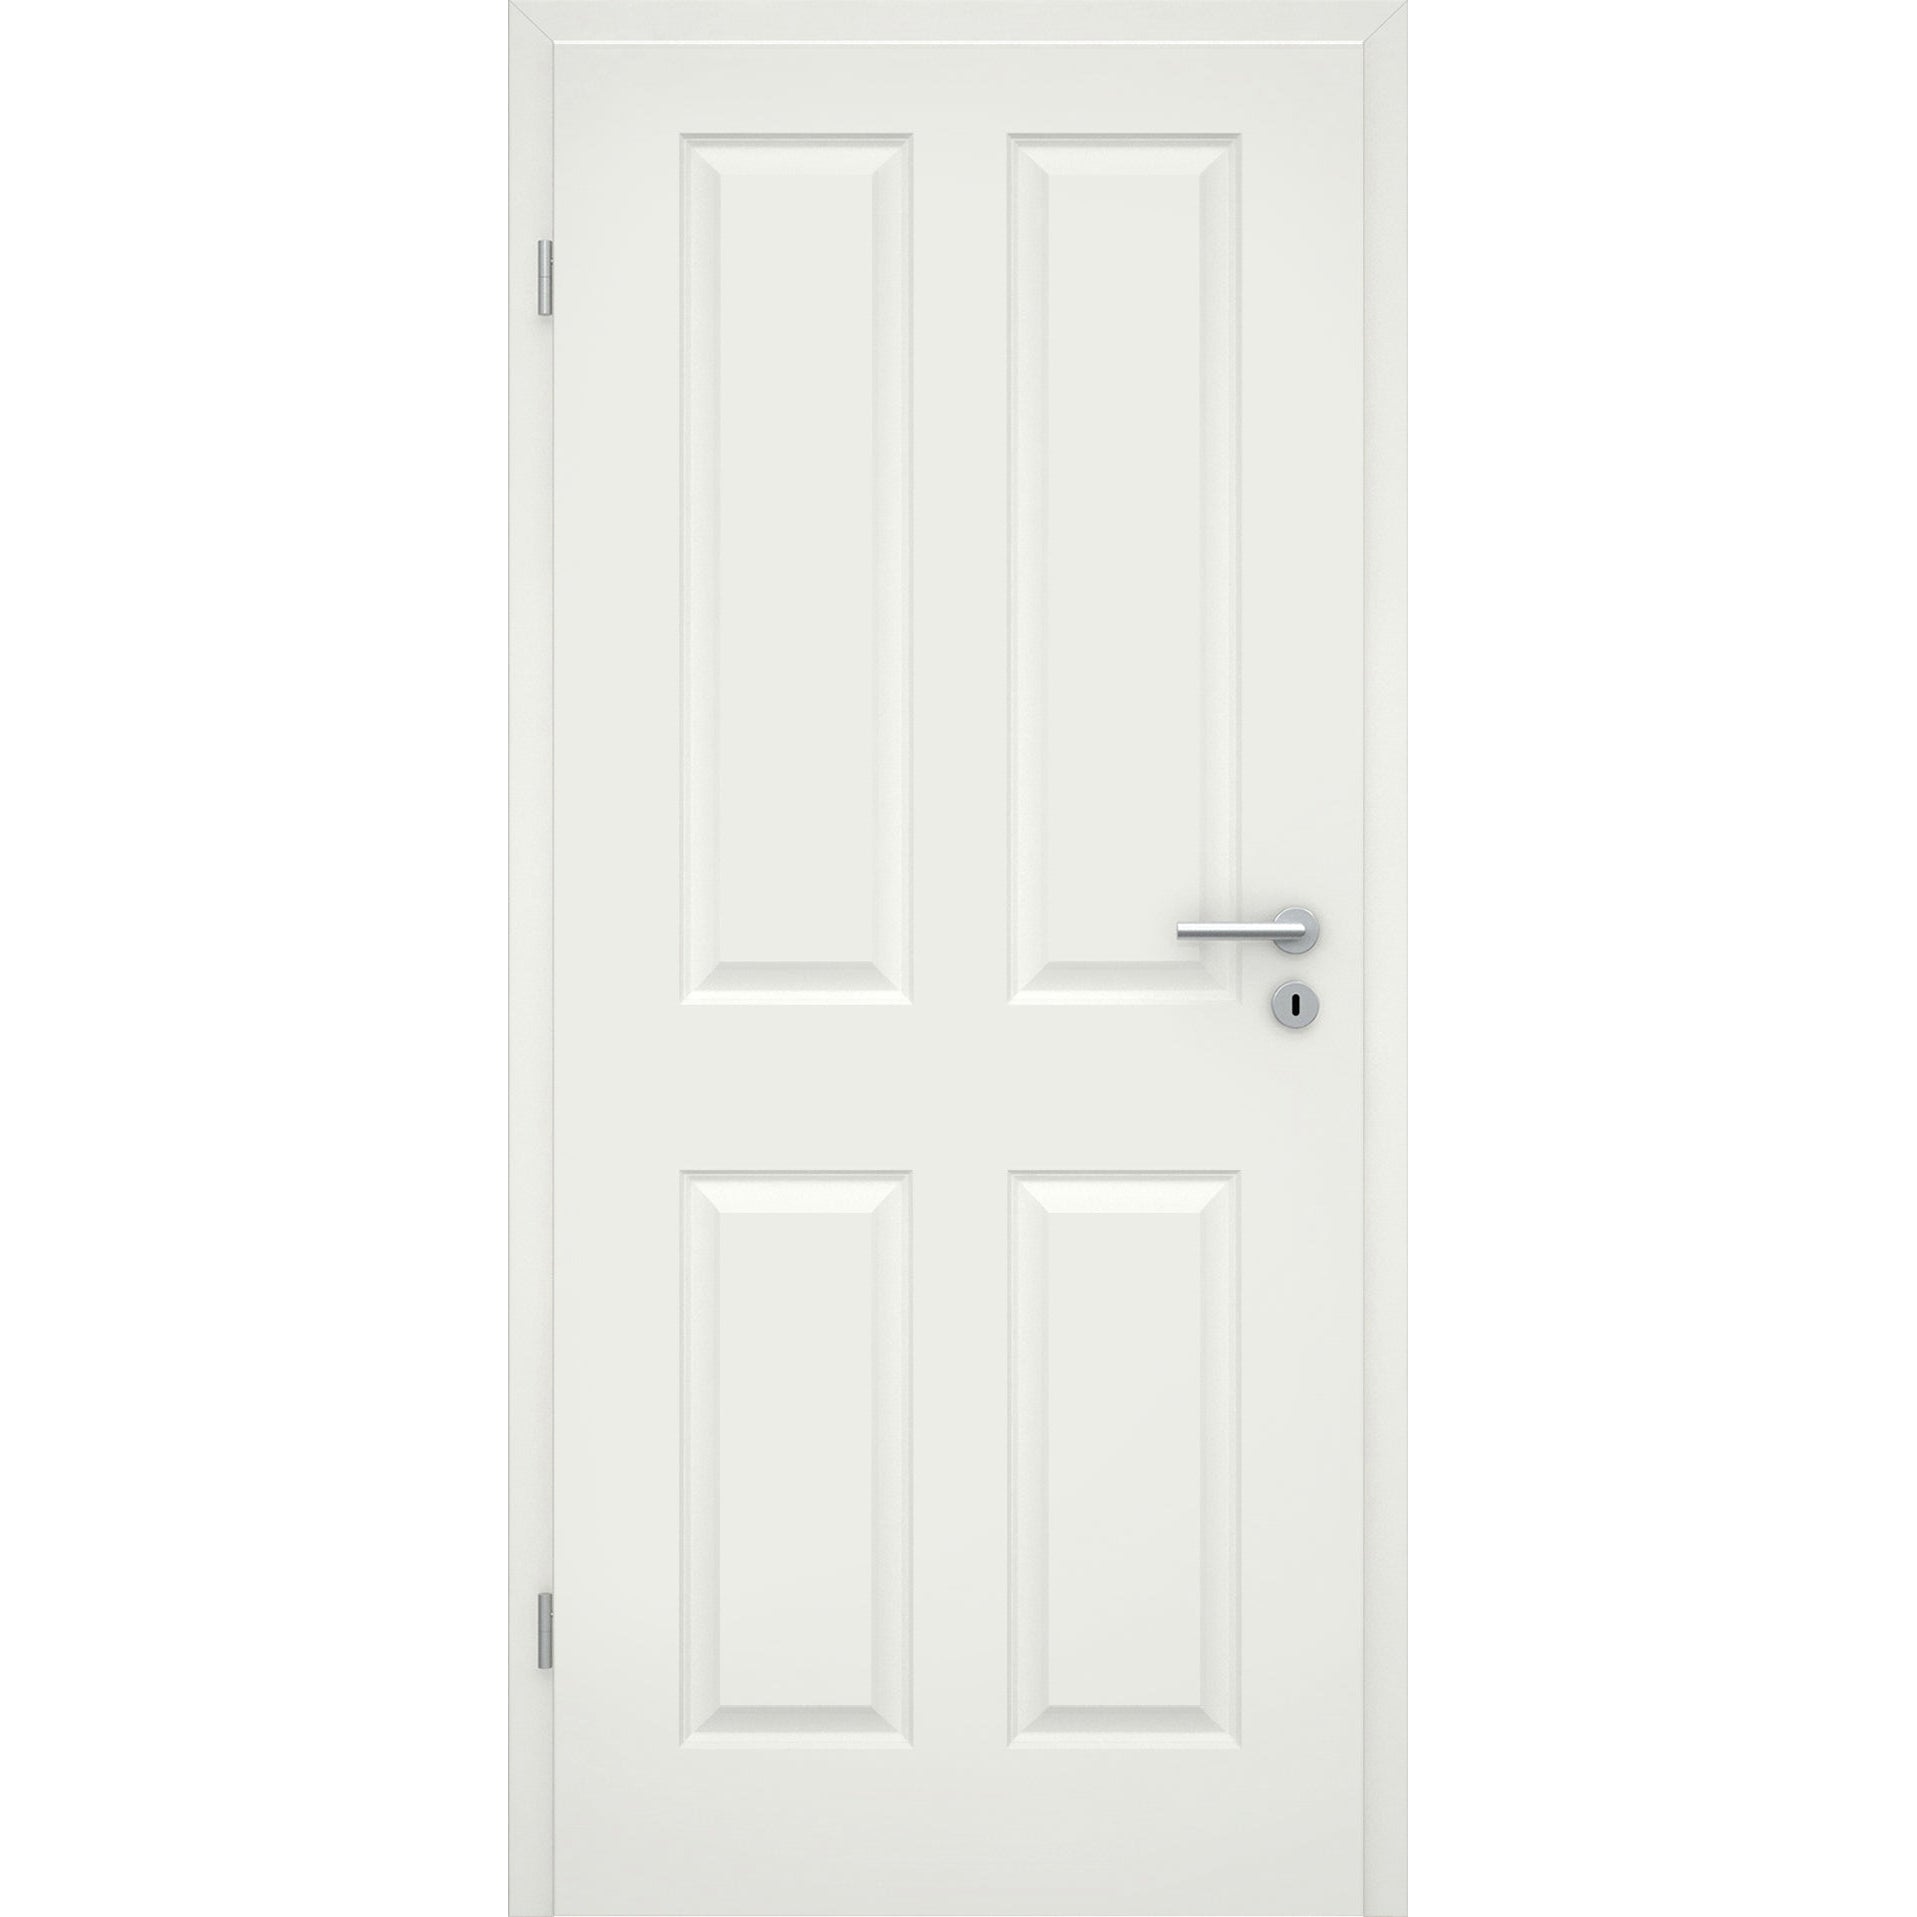 Zimmertür soft-weiß Stiltür mit 4 Kassetten Eckkante - Modell Stiltür K41